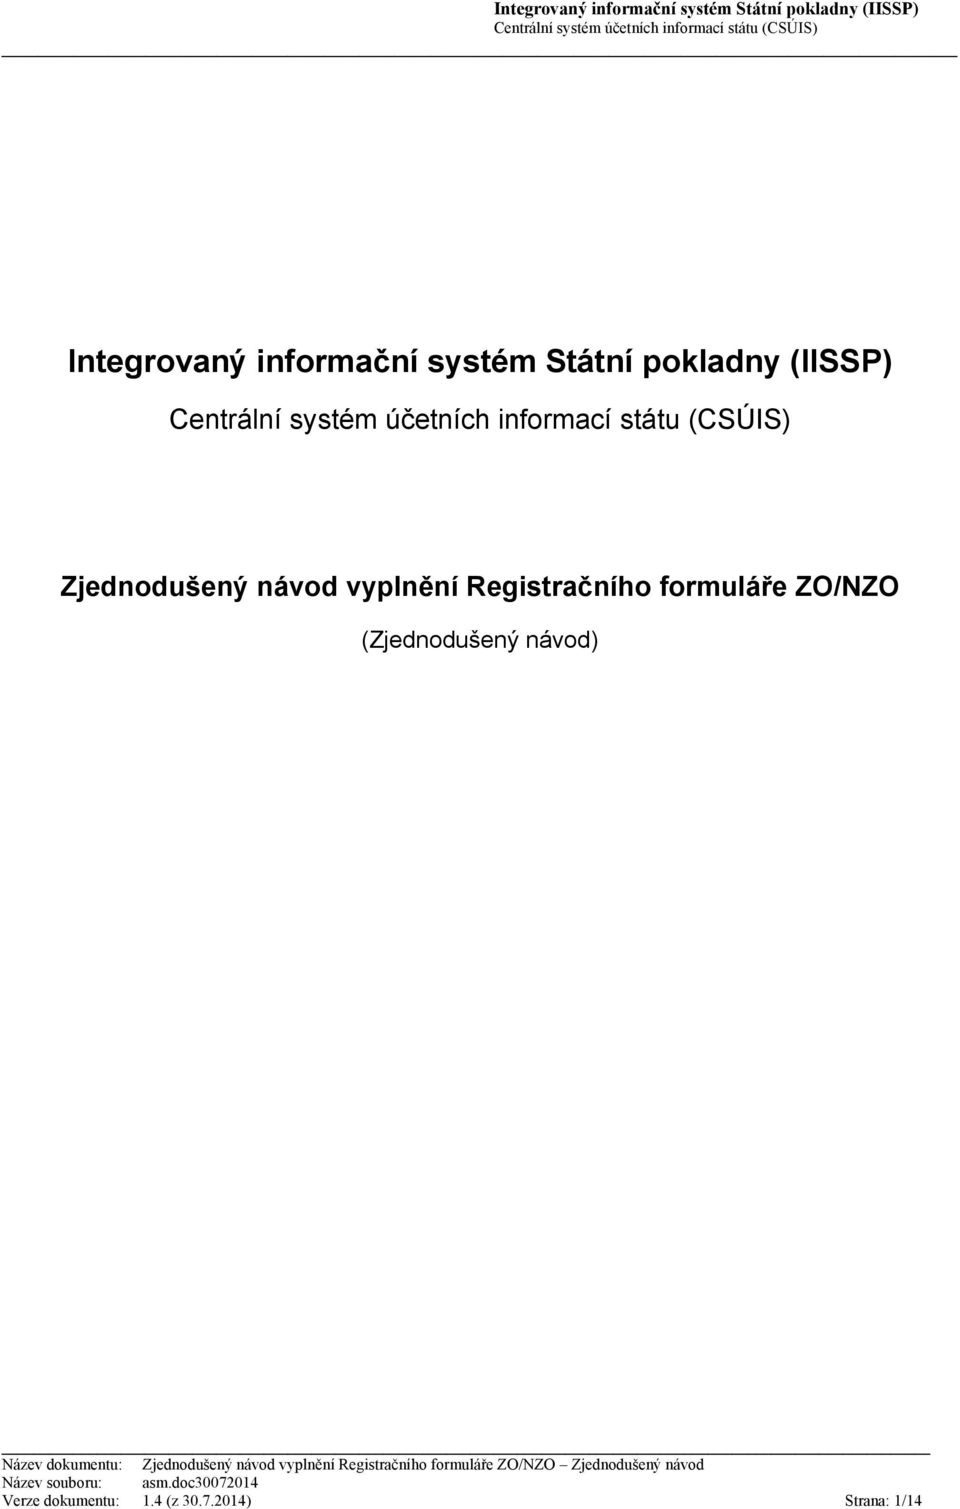 Registračního formuláře ZO/NZO (Zjednodušený